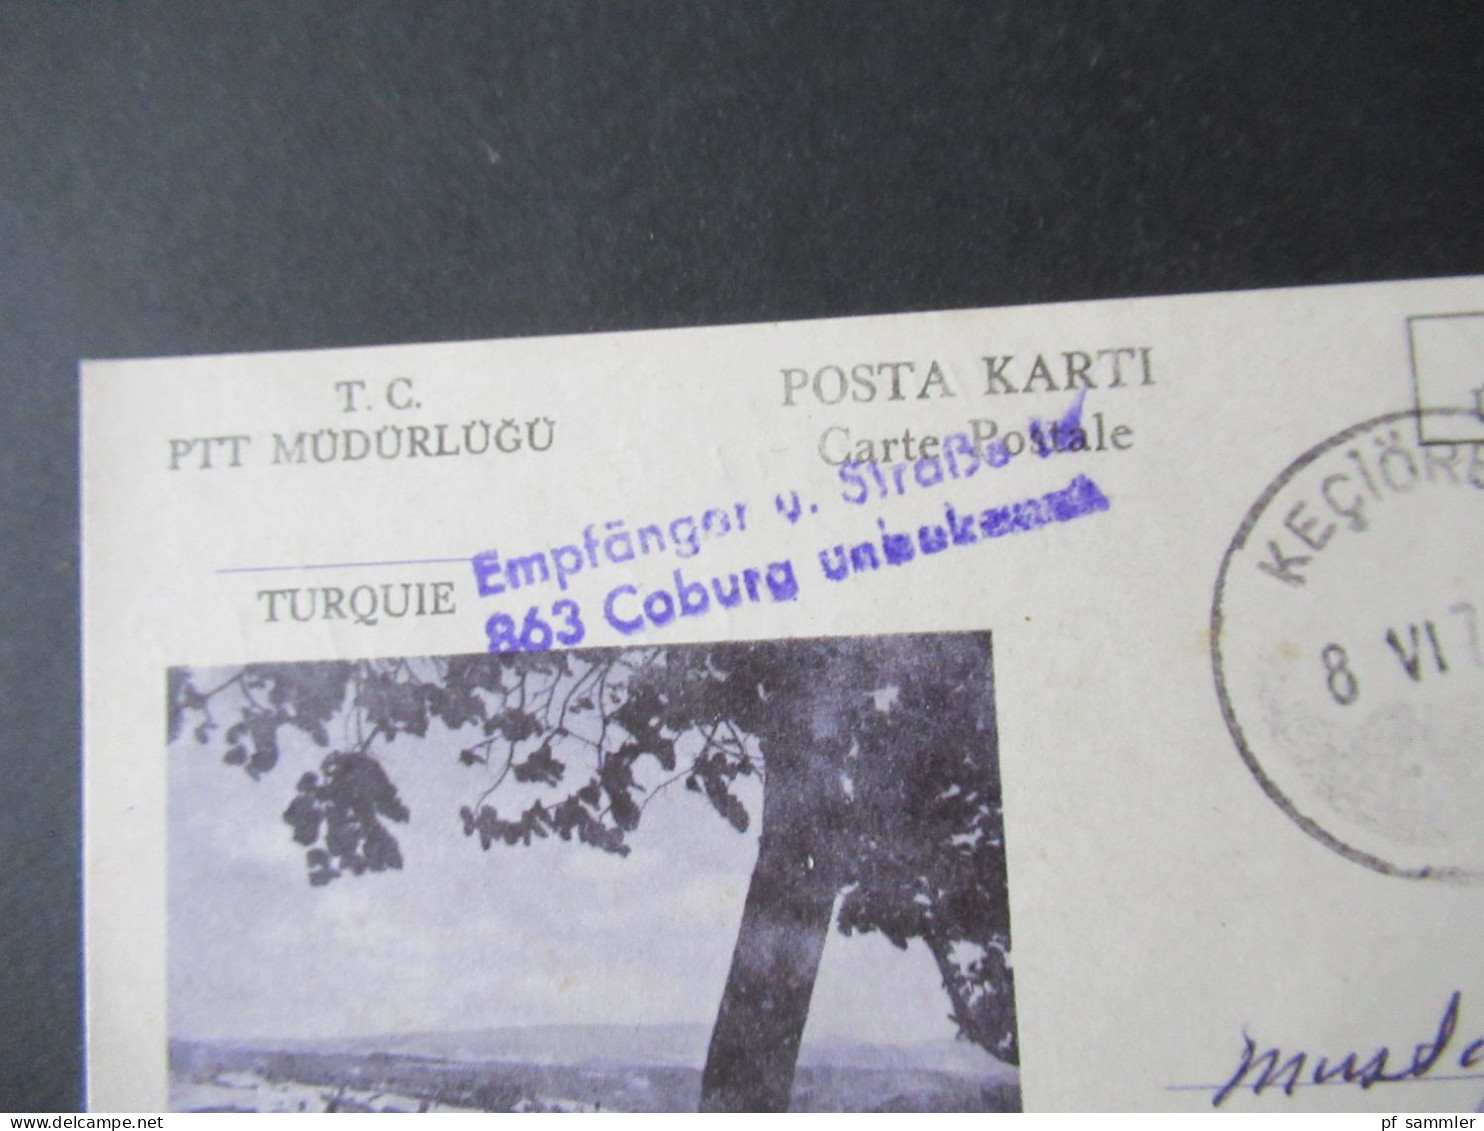 Türkei 1976 GA / P.P. Ücreti Ödenmistir Stempel Keciören Und Violetter L2 Empfänger U. Straße In 863 Coburg Unbekannt - Lettres & Documents